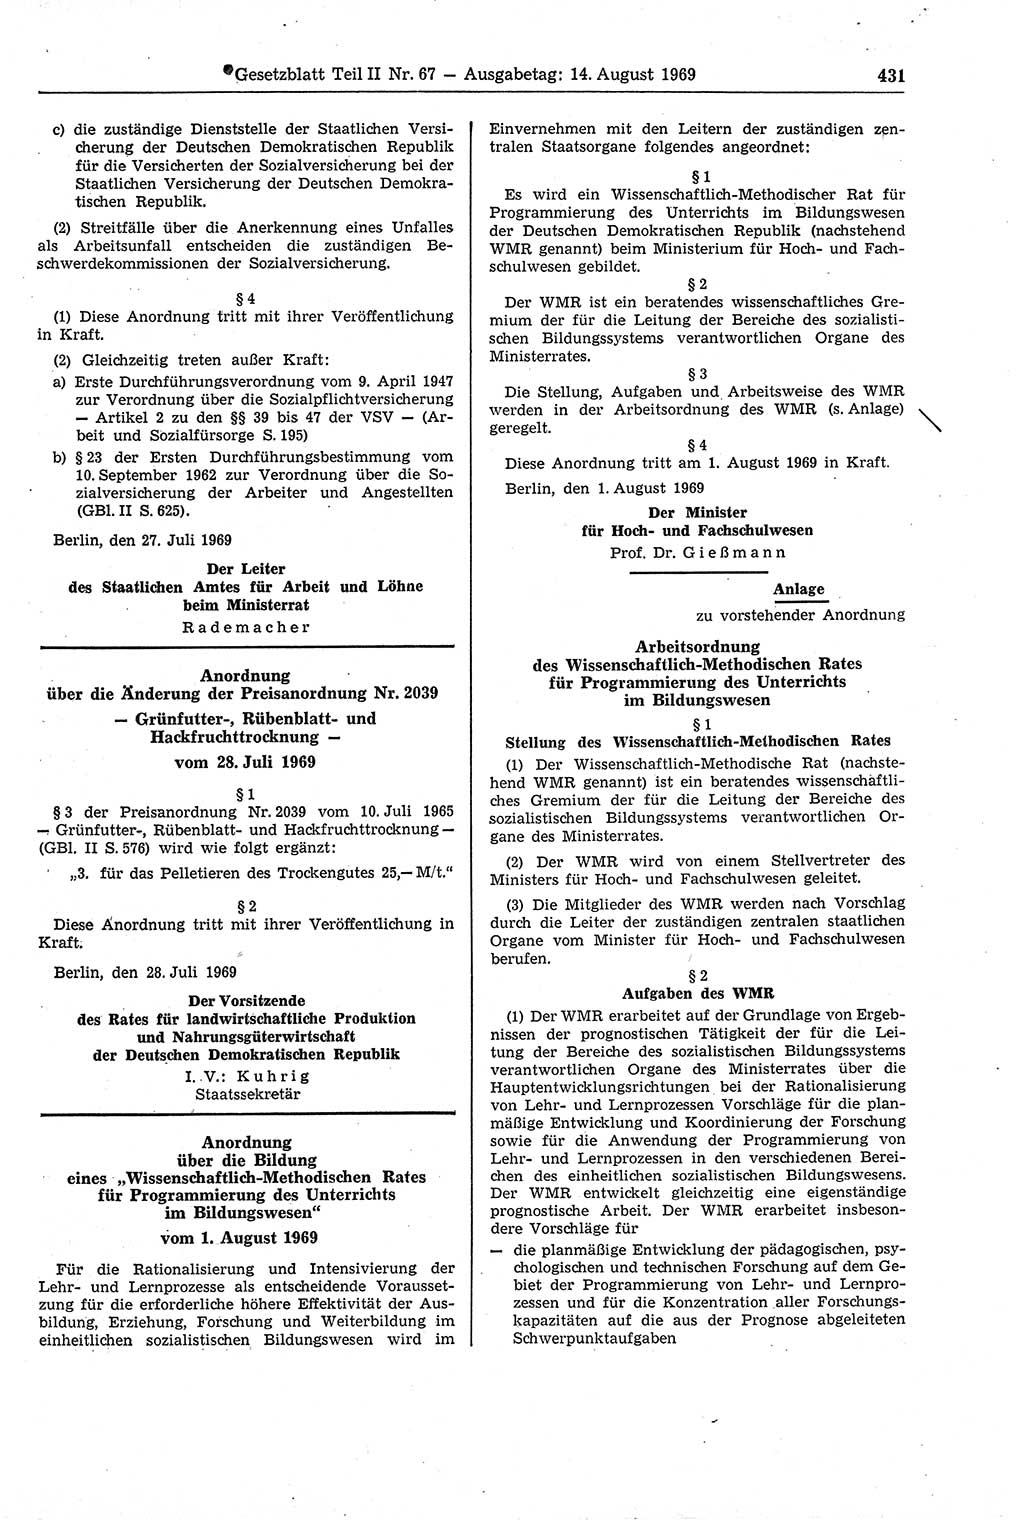 Gesetzblatt (GBl.) der Deutschen Demokratischen Republik (DDR) Teil ⅠⅠ 1969, Seite 431 (GBl. DDR ⅠⅠ 1969, S. 431)